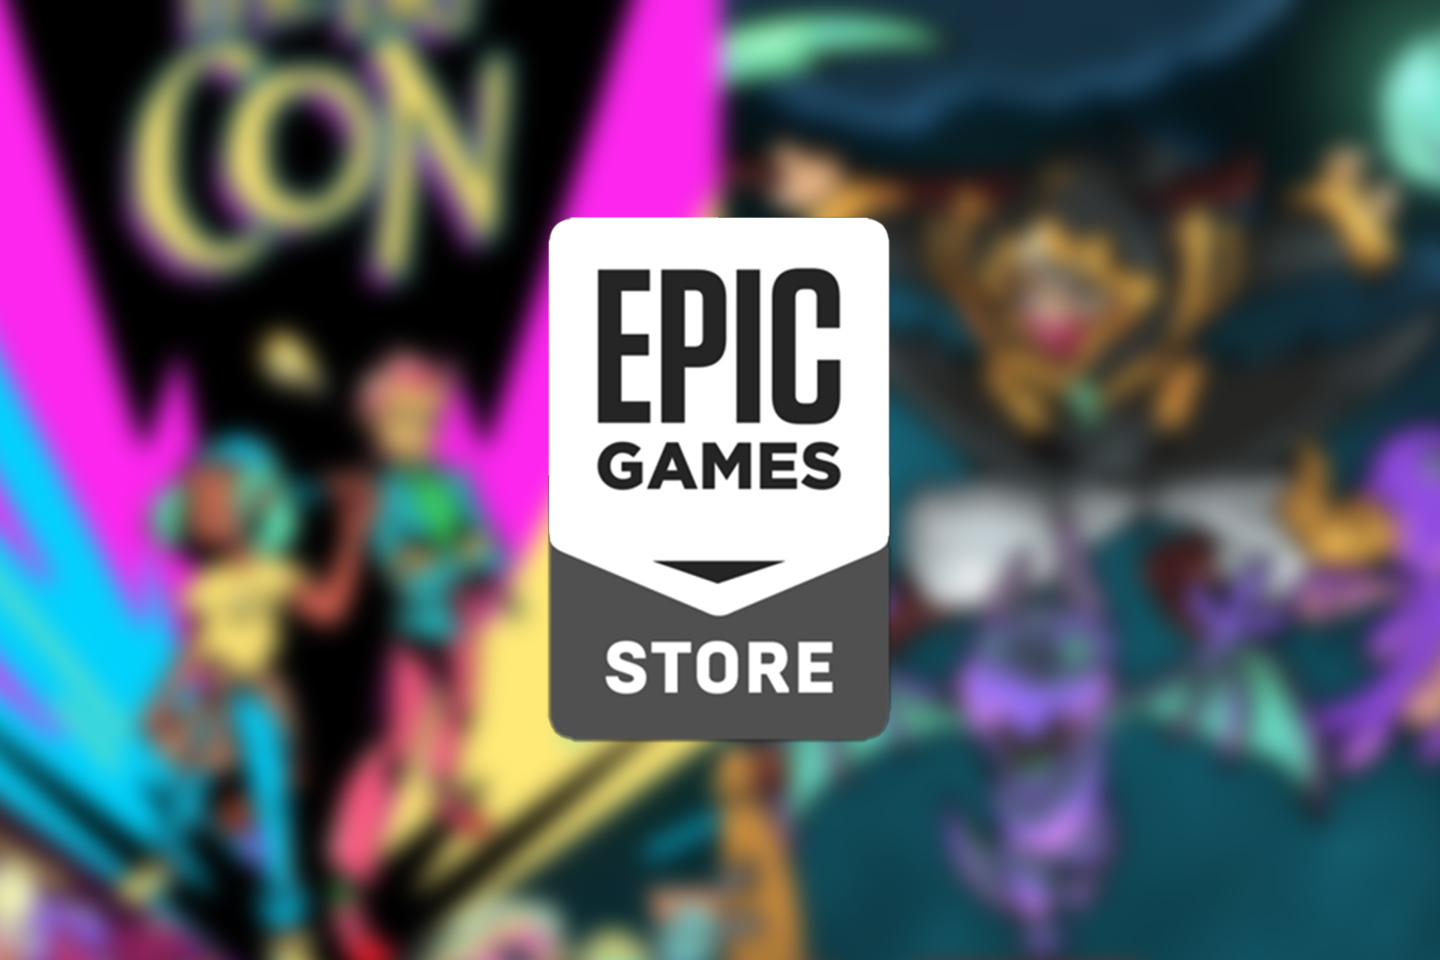 Epic Games libera dois jogos grátis nesta quinta (18)! Resgate agora